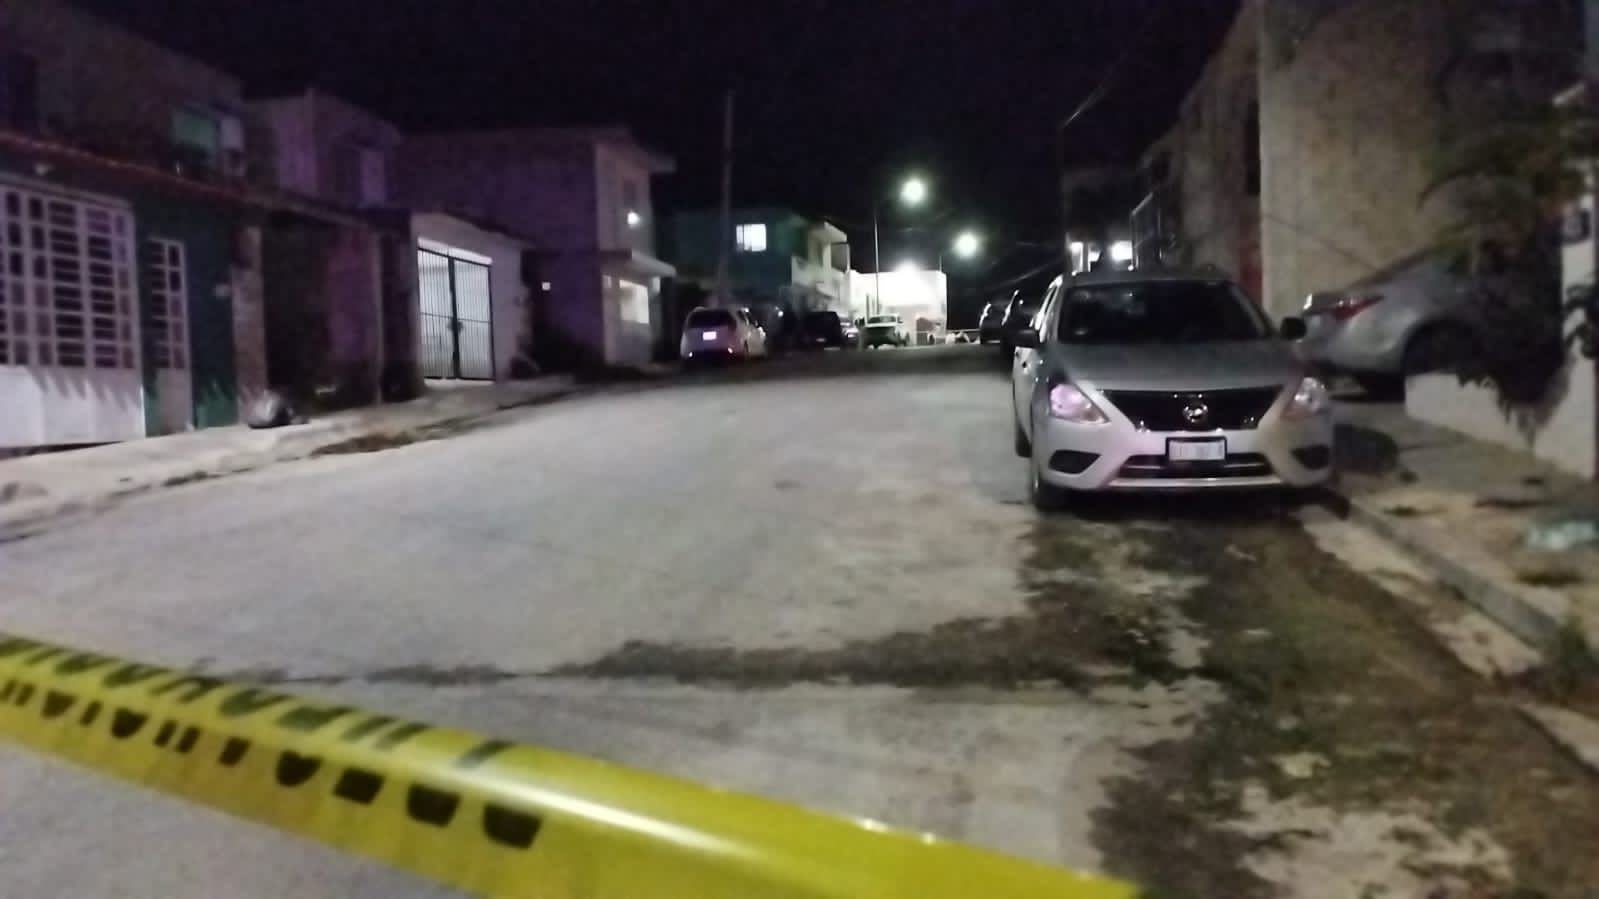 Personas desconocidas abren fuego contra una vivienda en Campeche